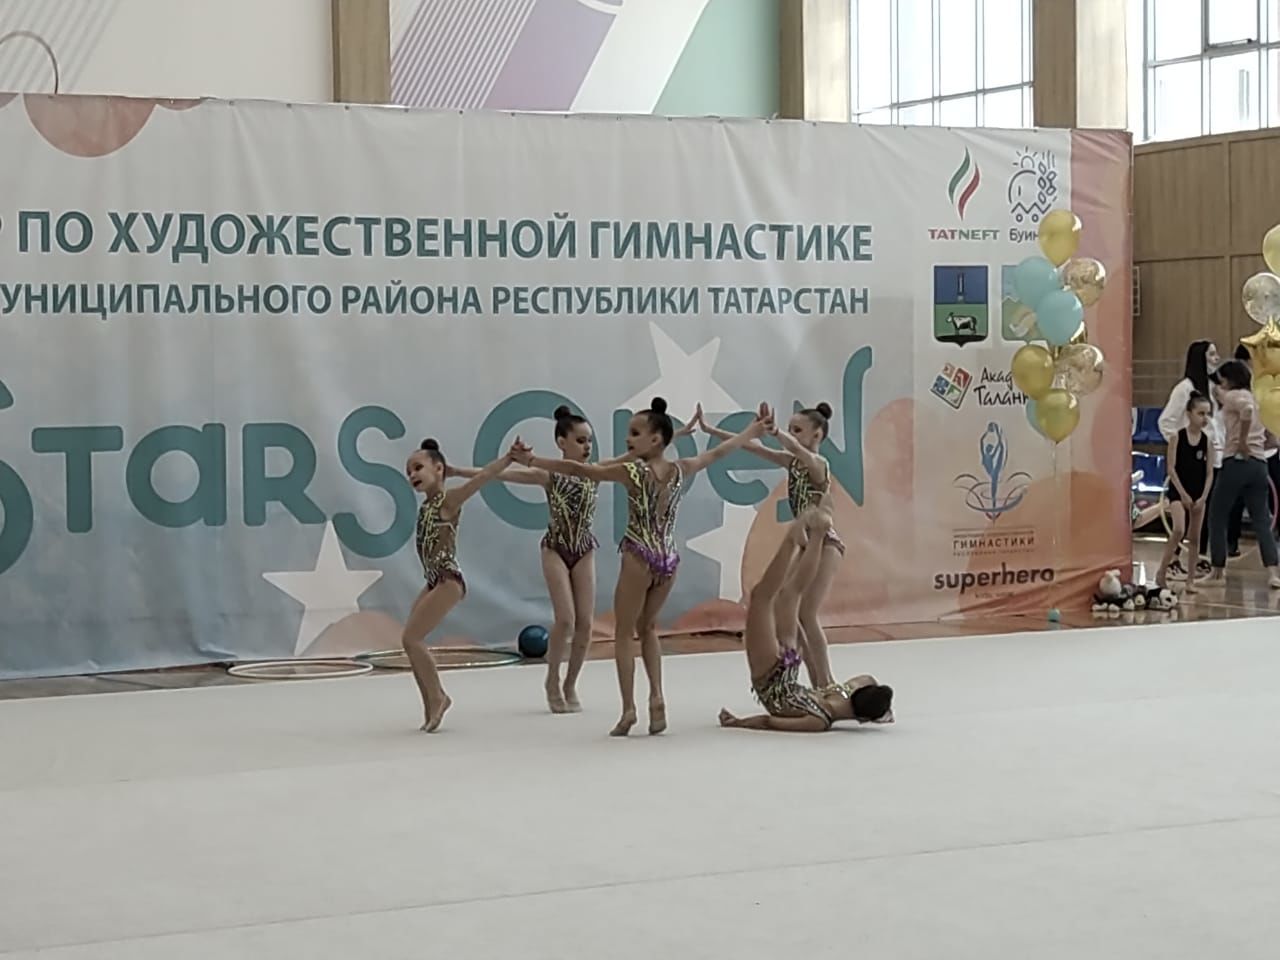 Буинск впервые приветствовал  юных гимнасток